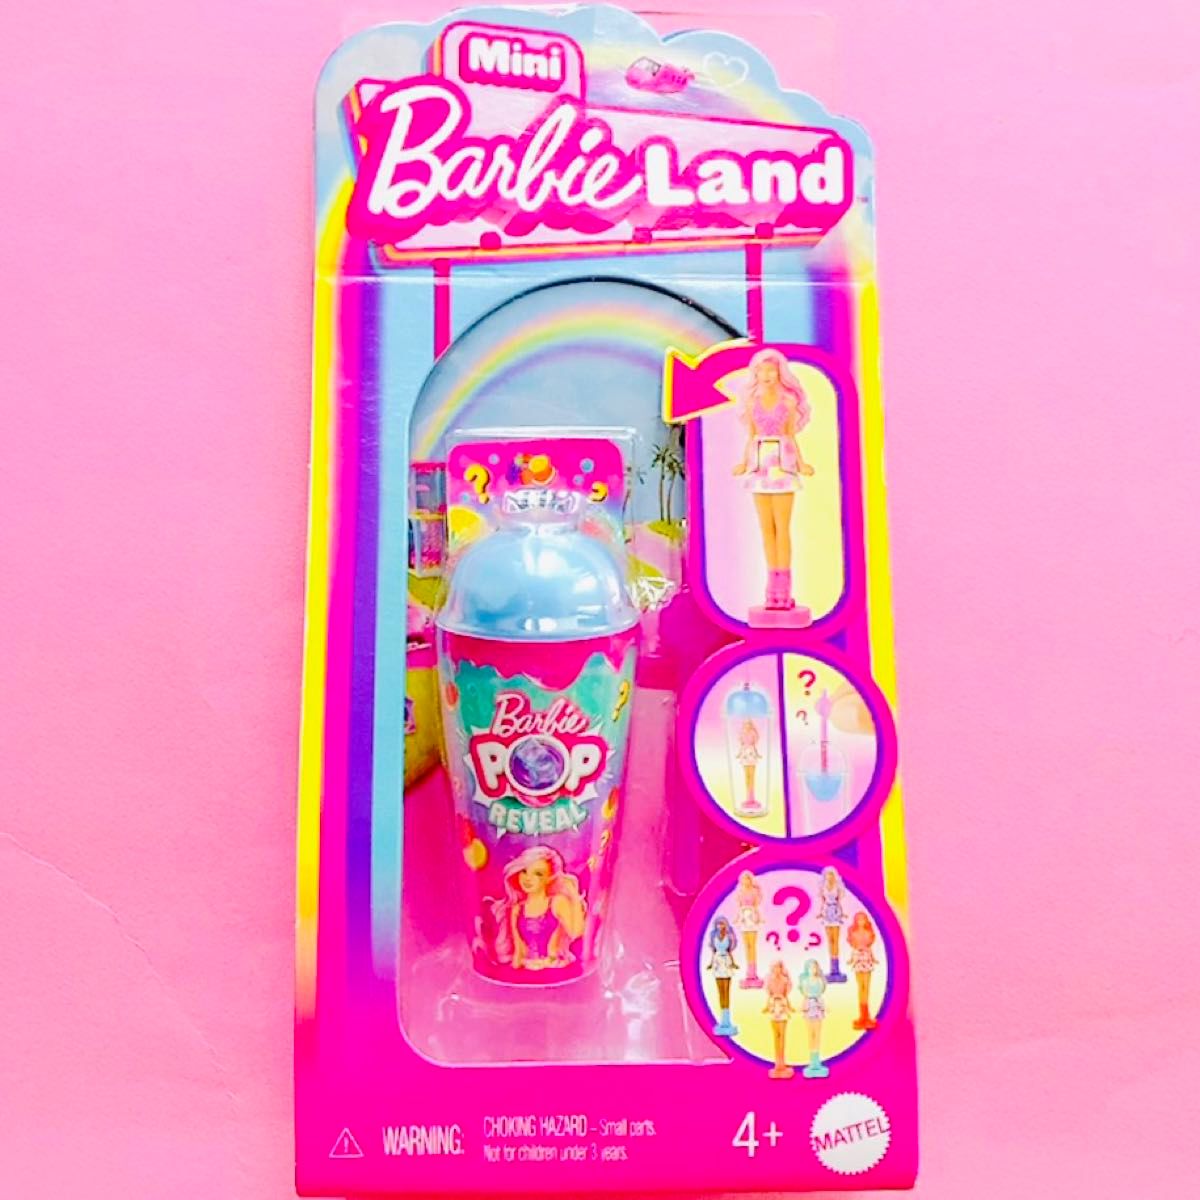 日本未発売 アメリカ バービー mini Barbie land pop reveal サプライズ トイ おもちゃ